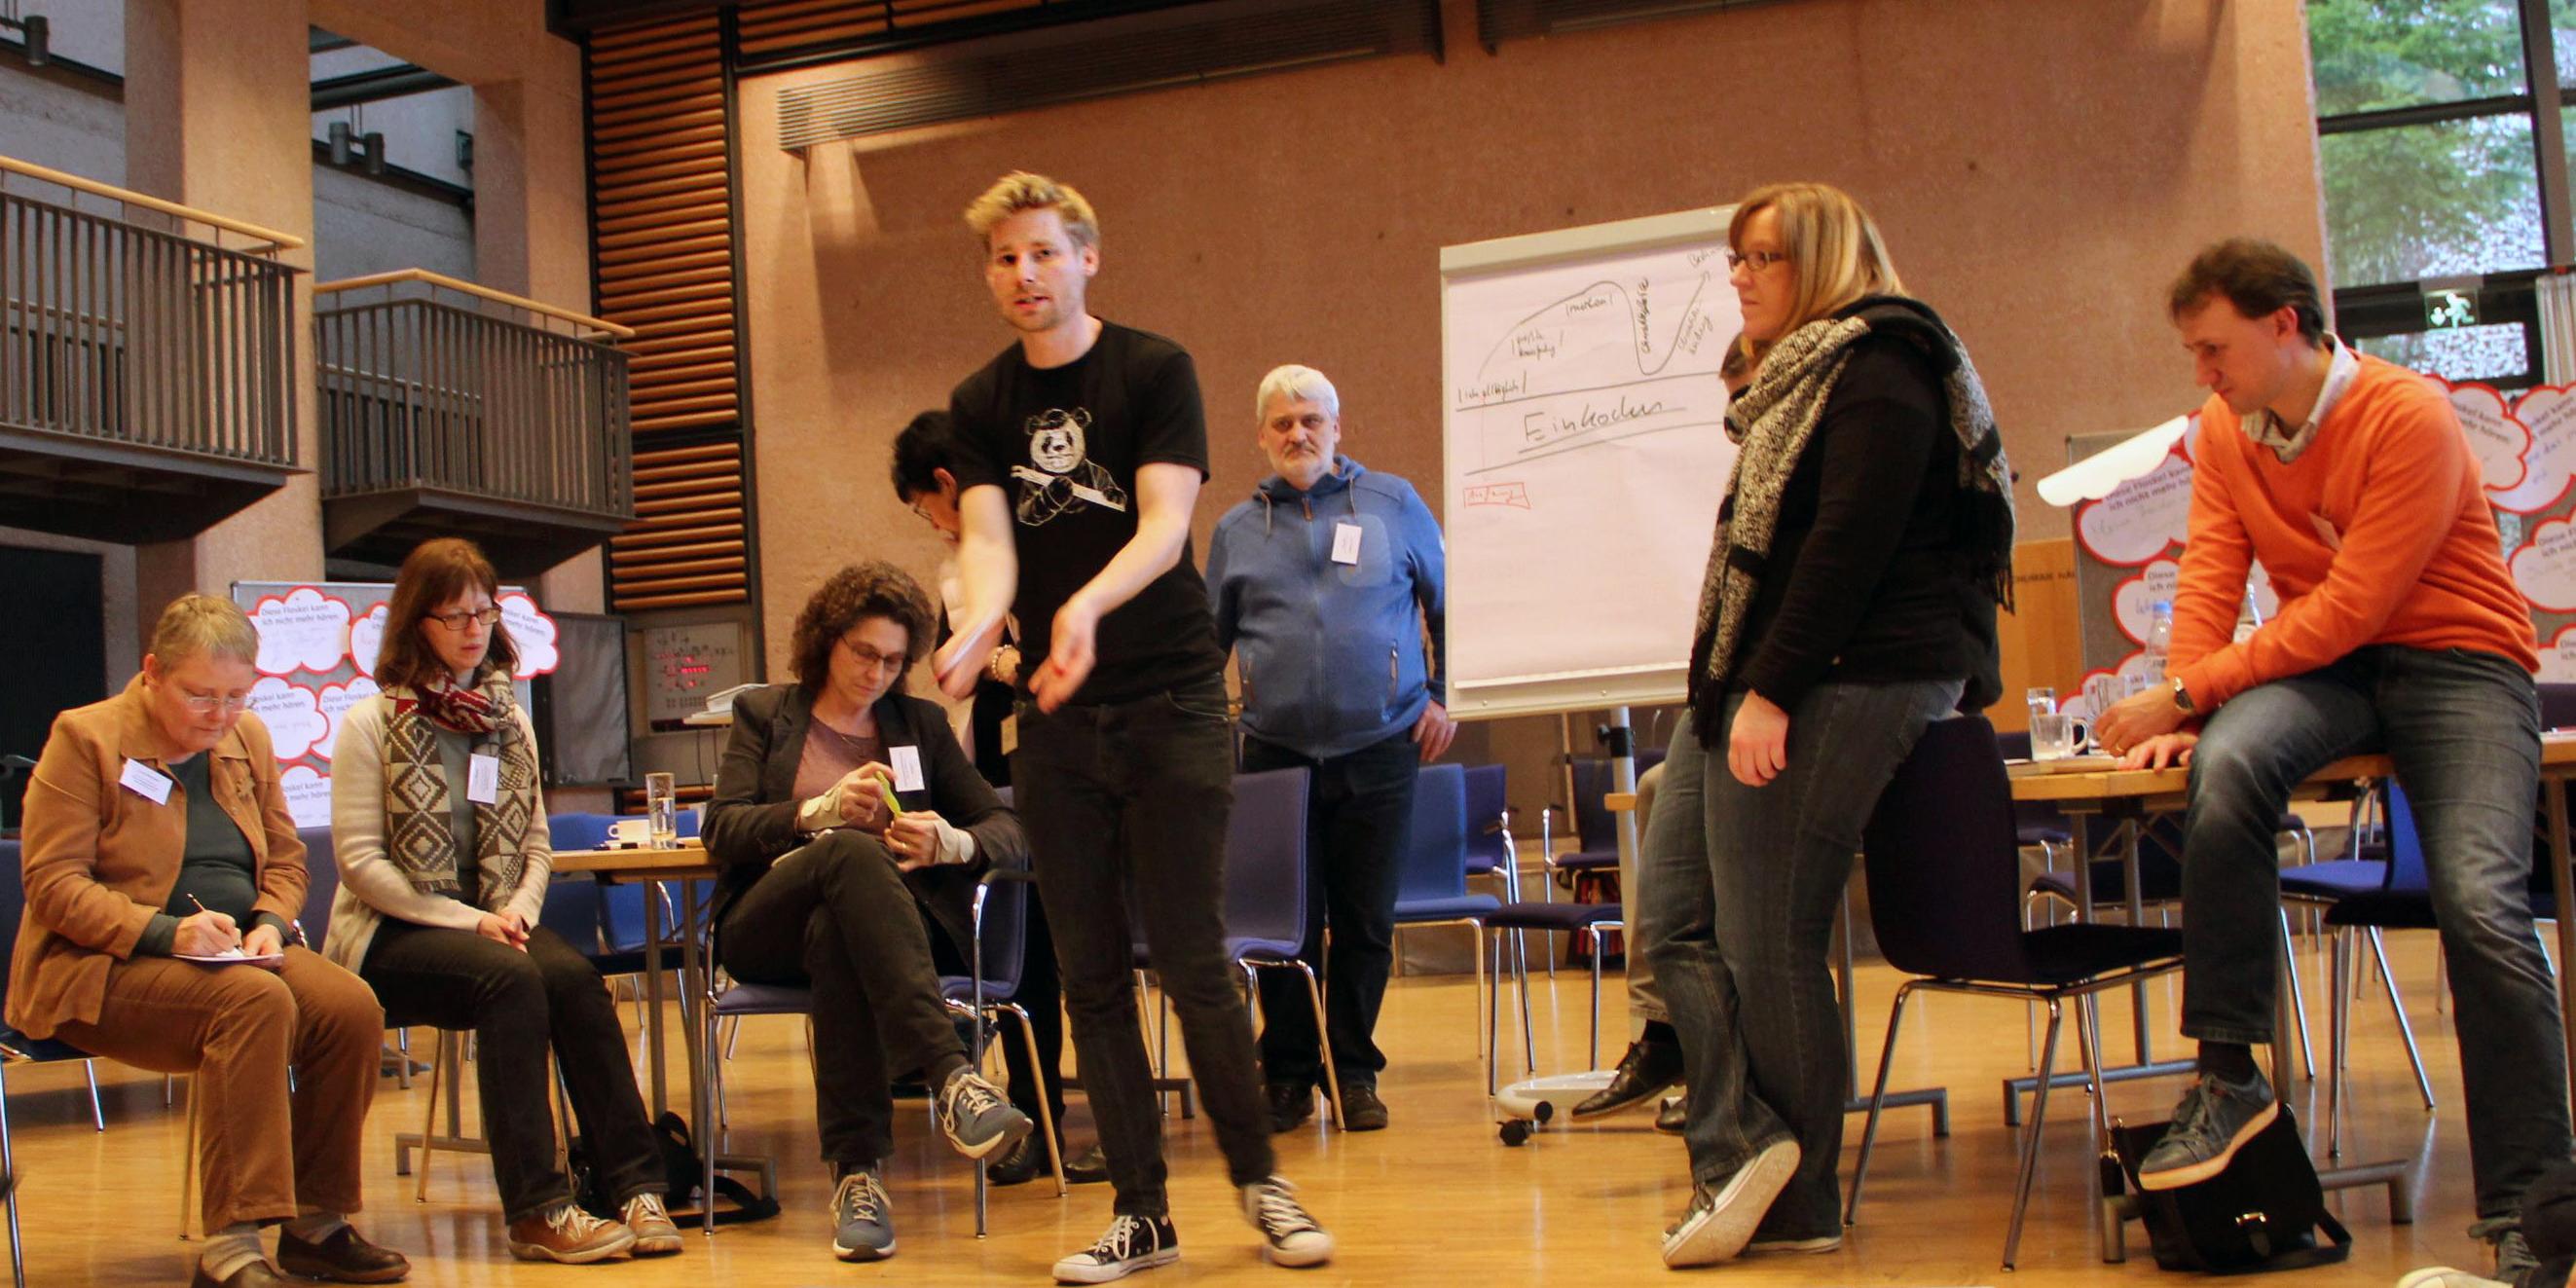 Erik Flügge sprach über Kommunikation bei der Jugendarbeit und bot einen Workshop zum Thema Storytelling an.